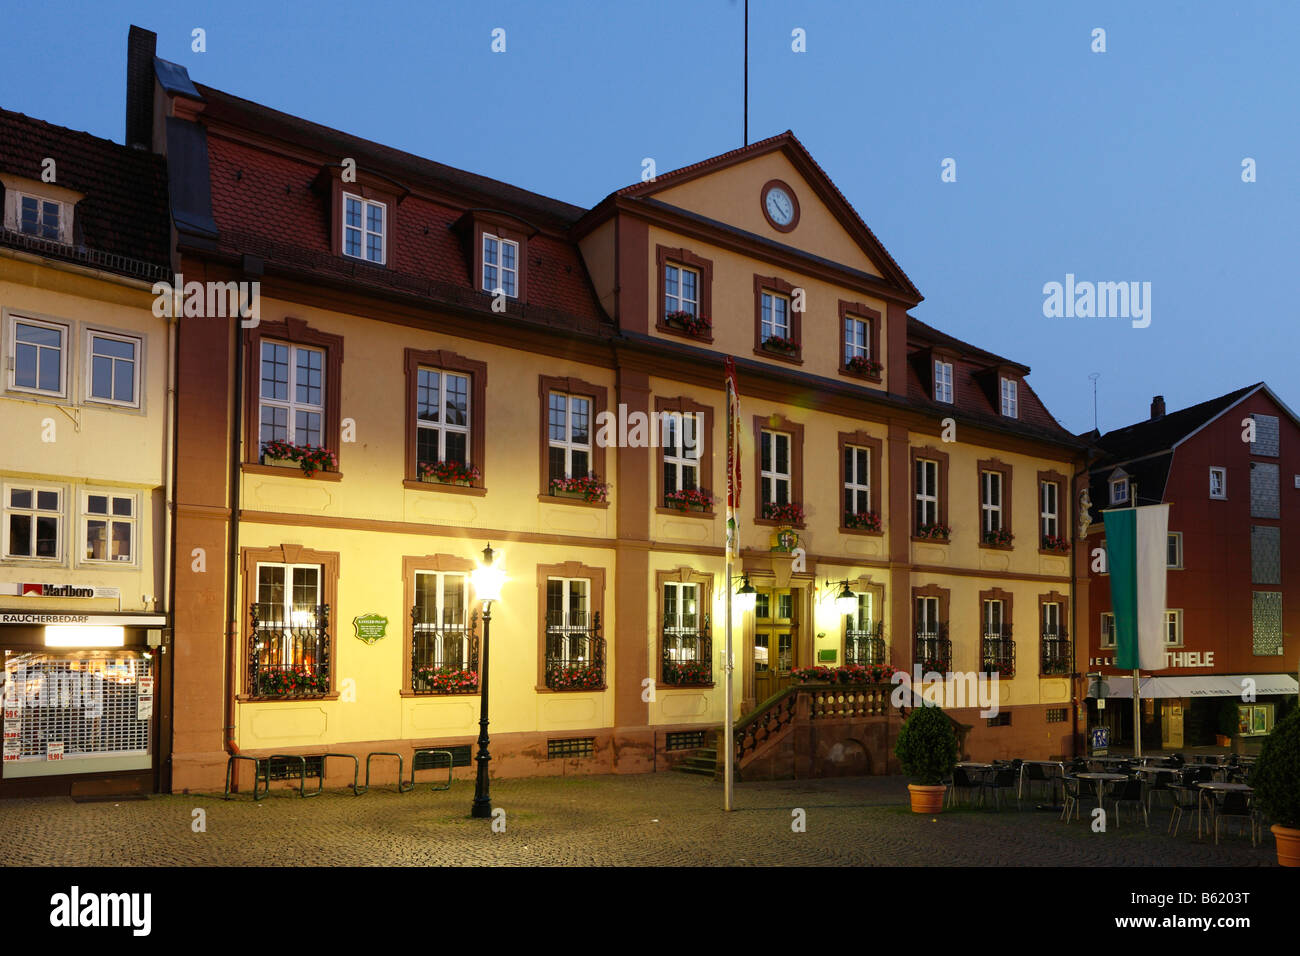 Histórico palacio del canciller, Fulda, Rhoen, Hesse, Alemania, Europa Foto de stock